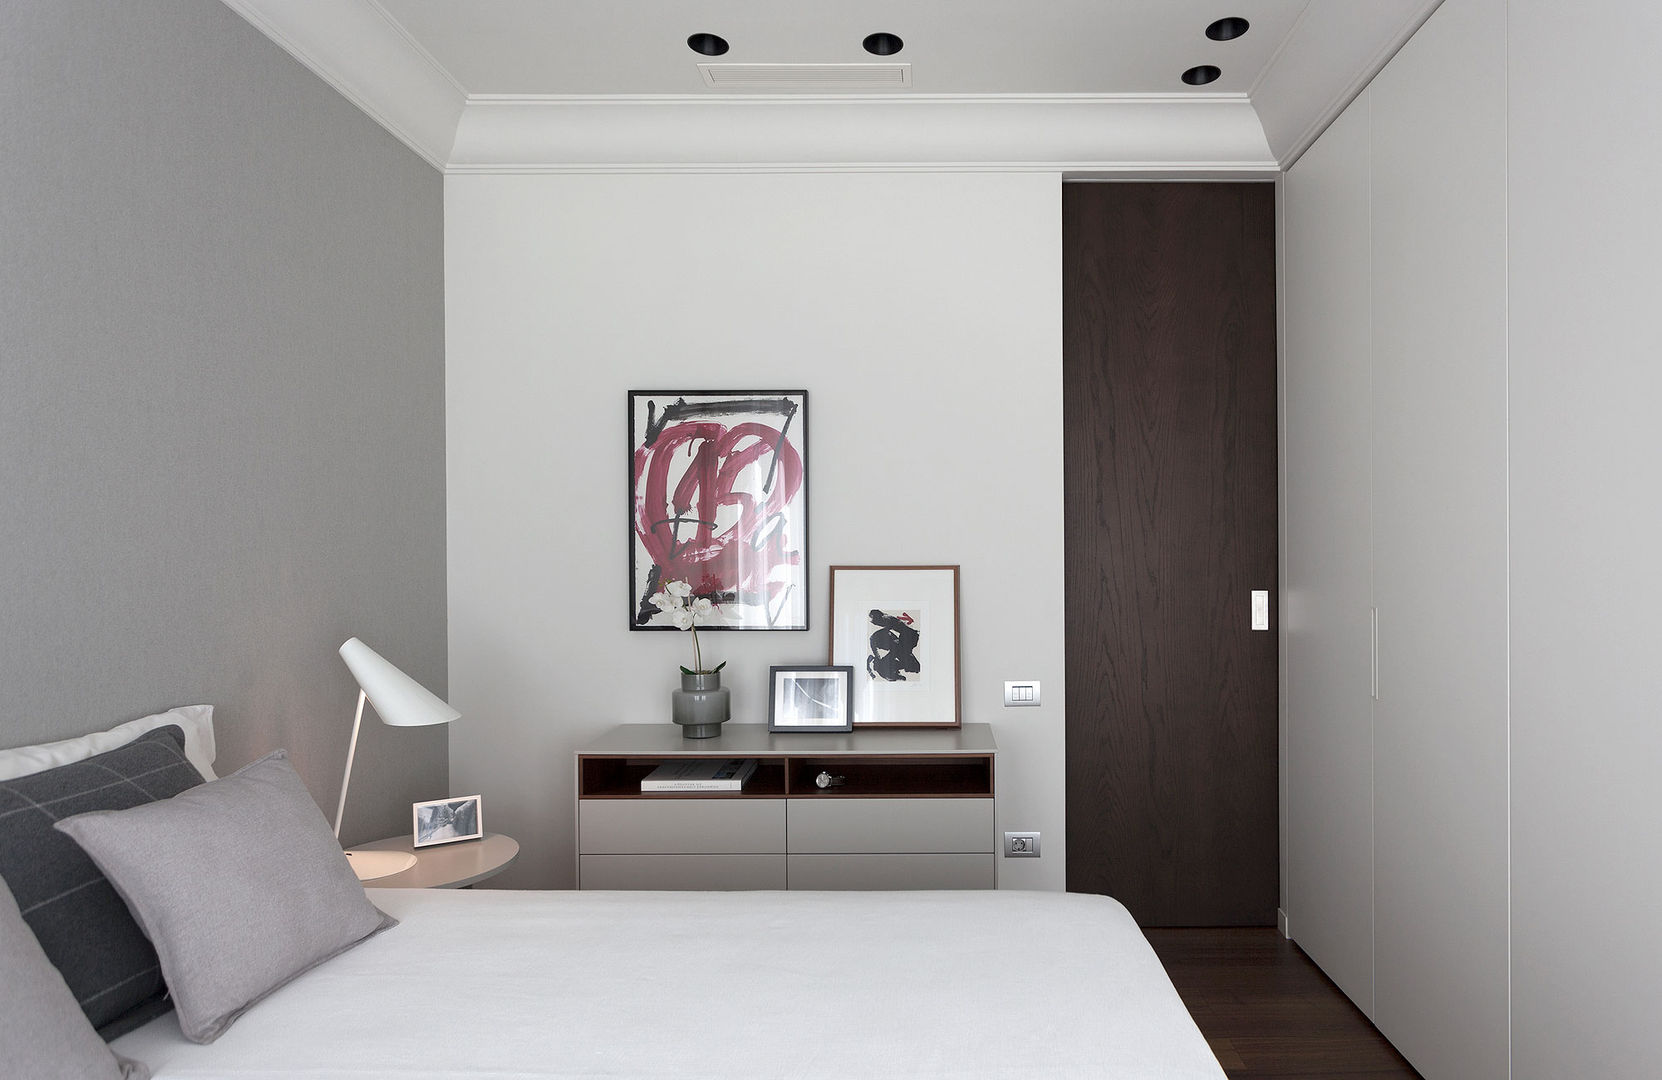 Dormitorio principal en tonos neutros decorado con arte MANUEL GARCÍA ASOCIADOS Dormitorios de estilo moderno